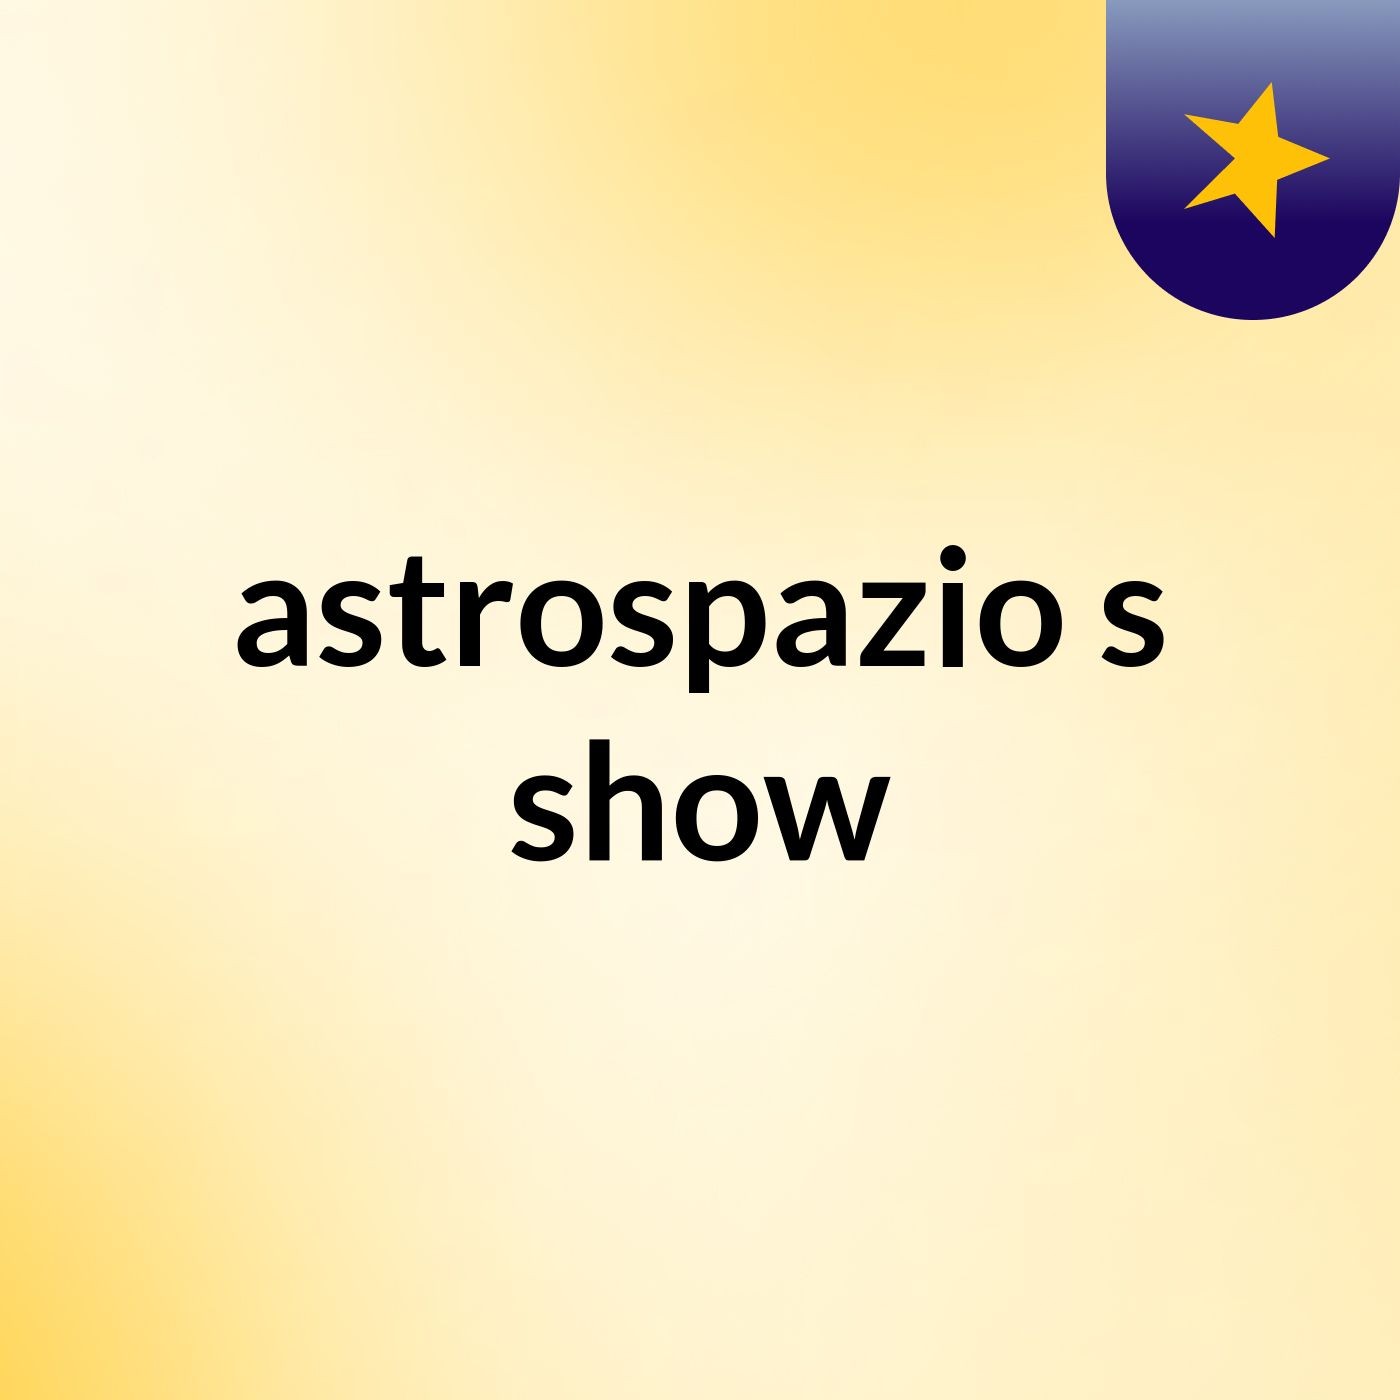 astrospazio's show